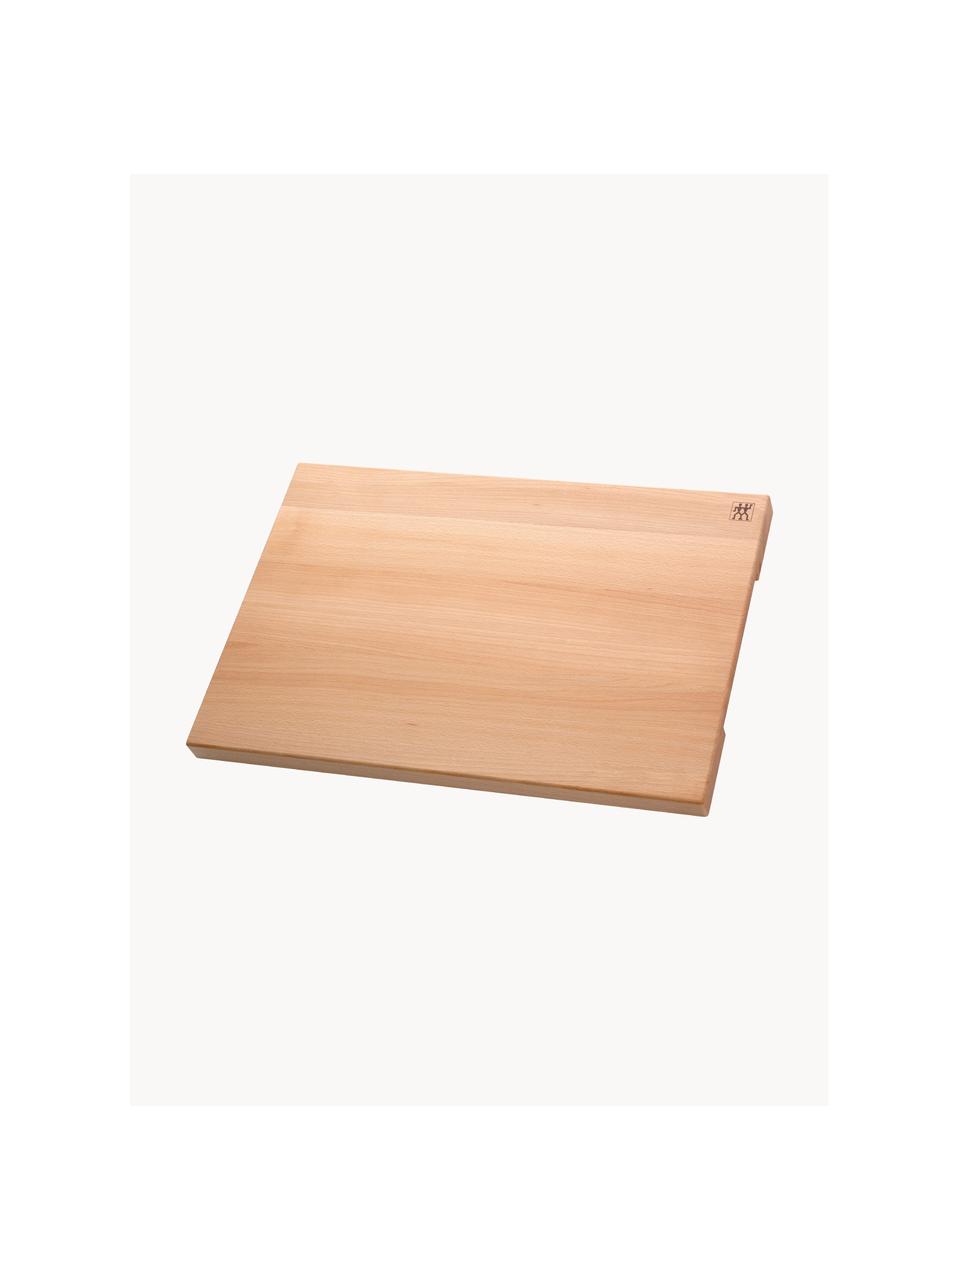 Tagliere in legno di faggio Cook, Legno di faggio, Legno di faggio, Larg. 60 x Prof. 40 cm